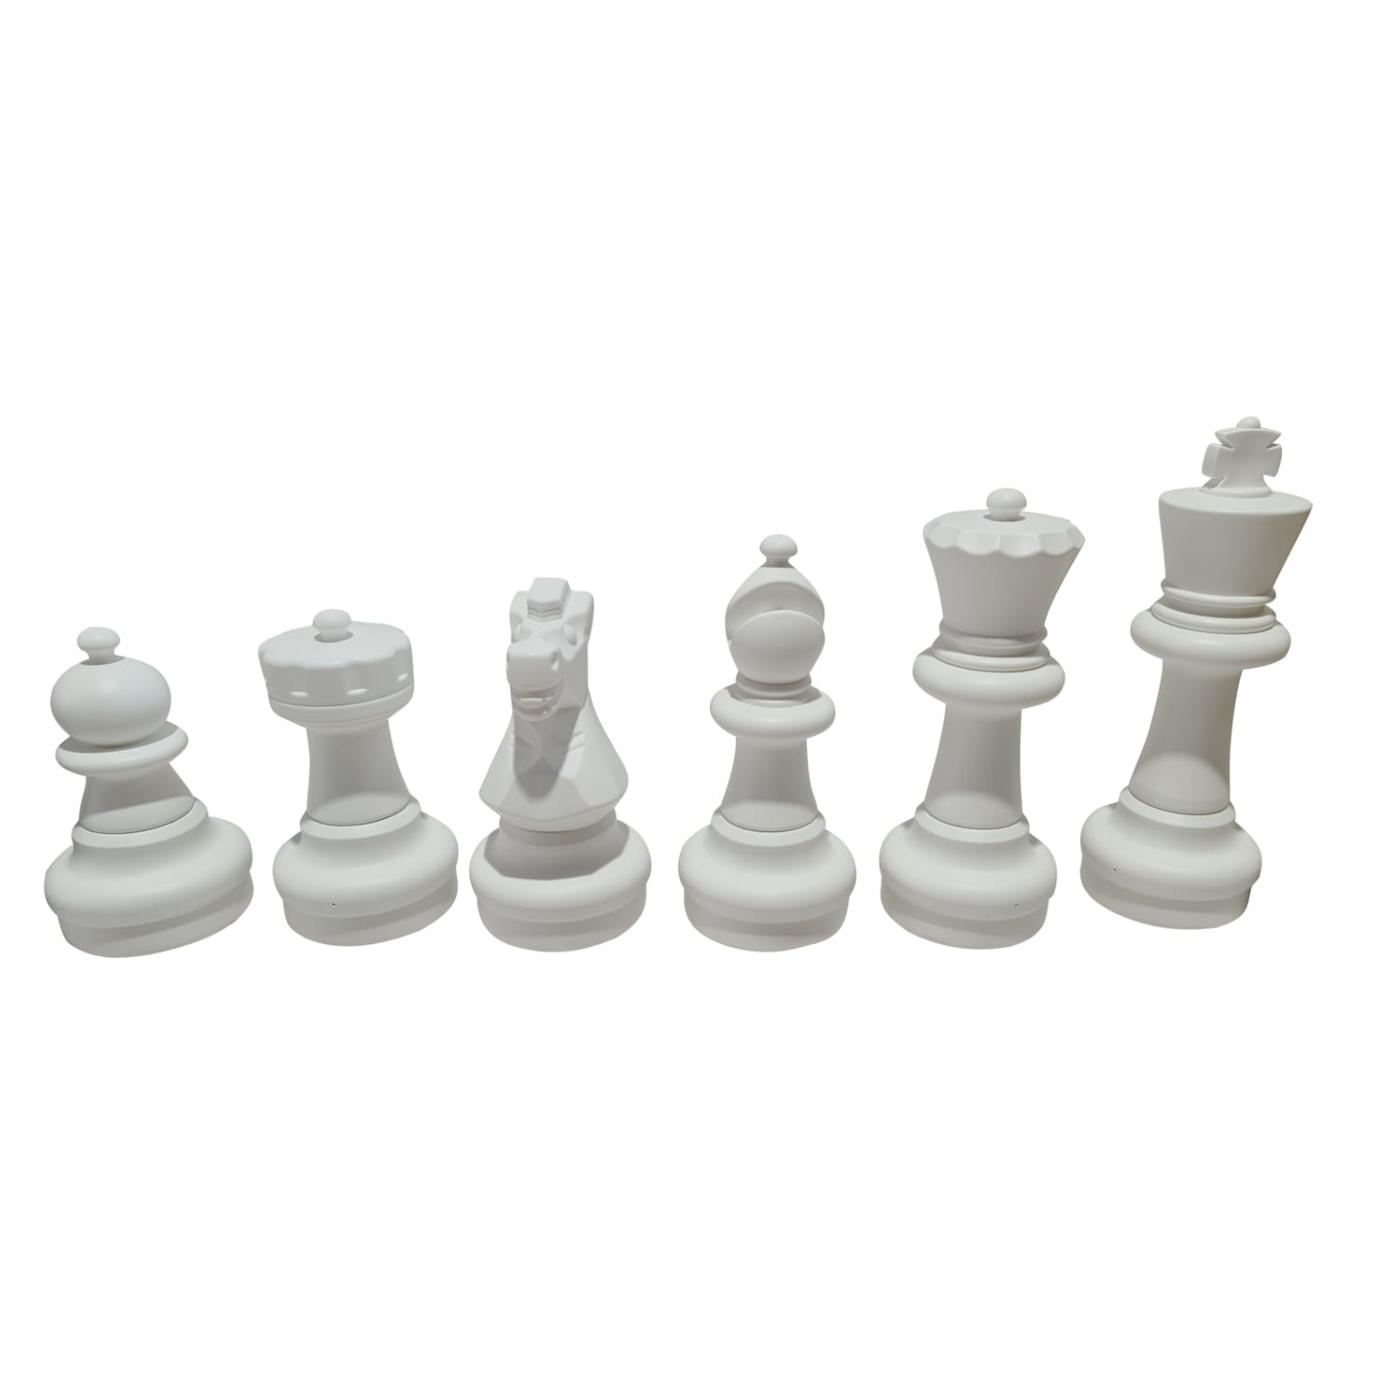 Peão do xadrez Bispo, xadrez, pino, esportes png